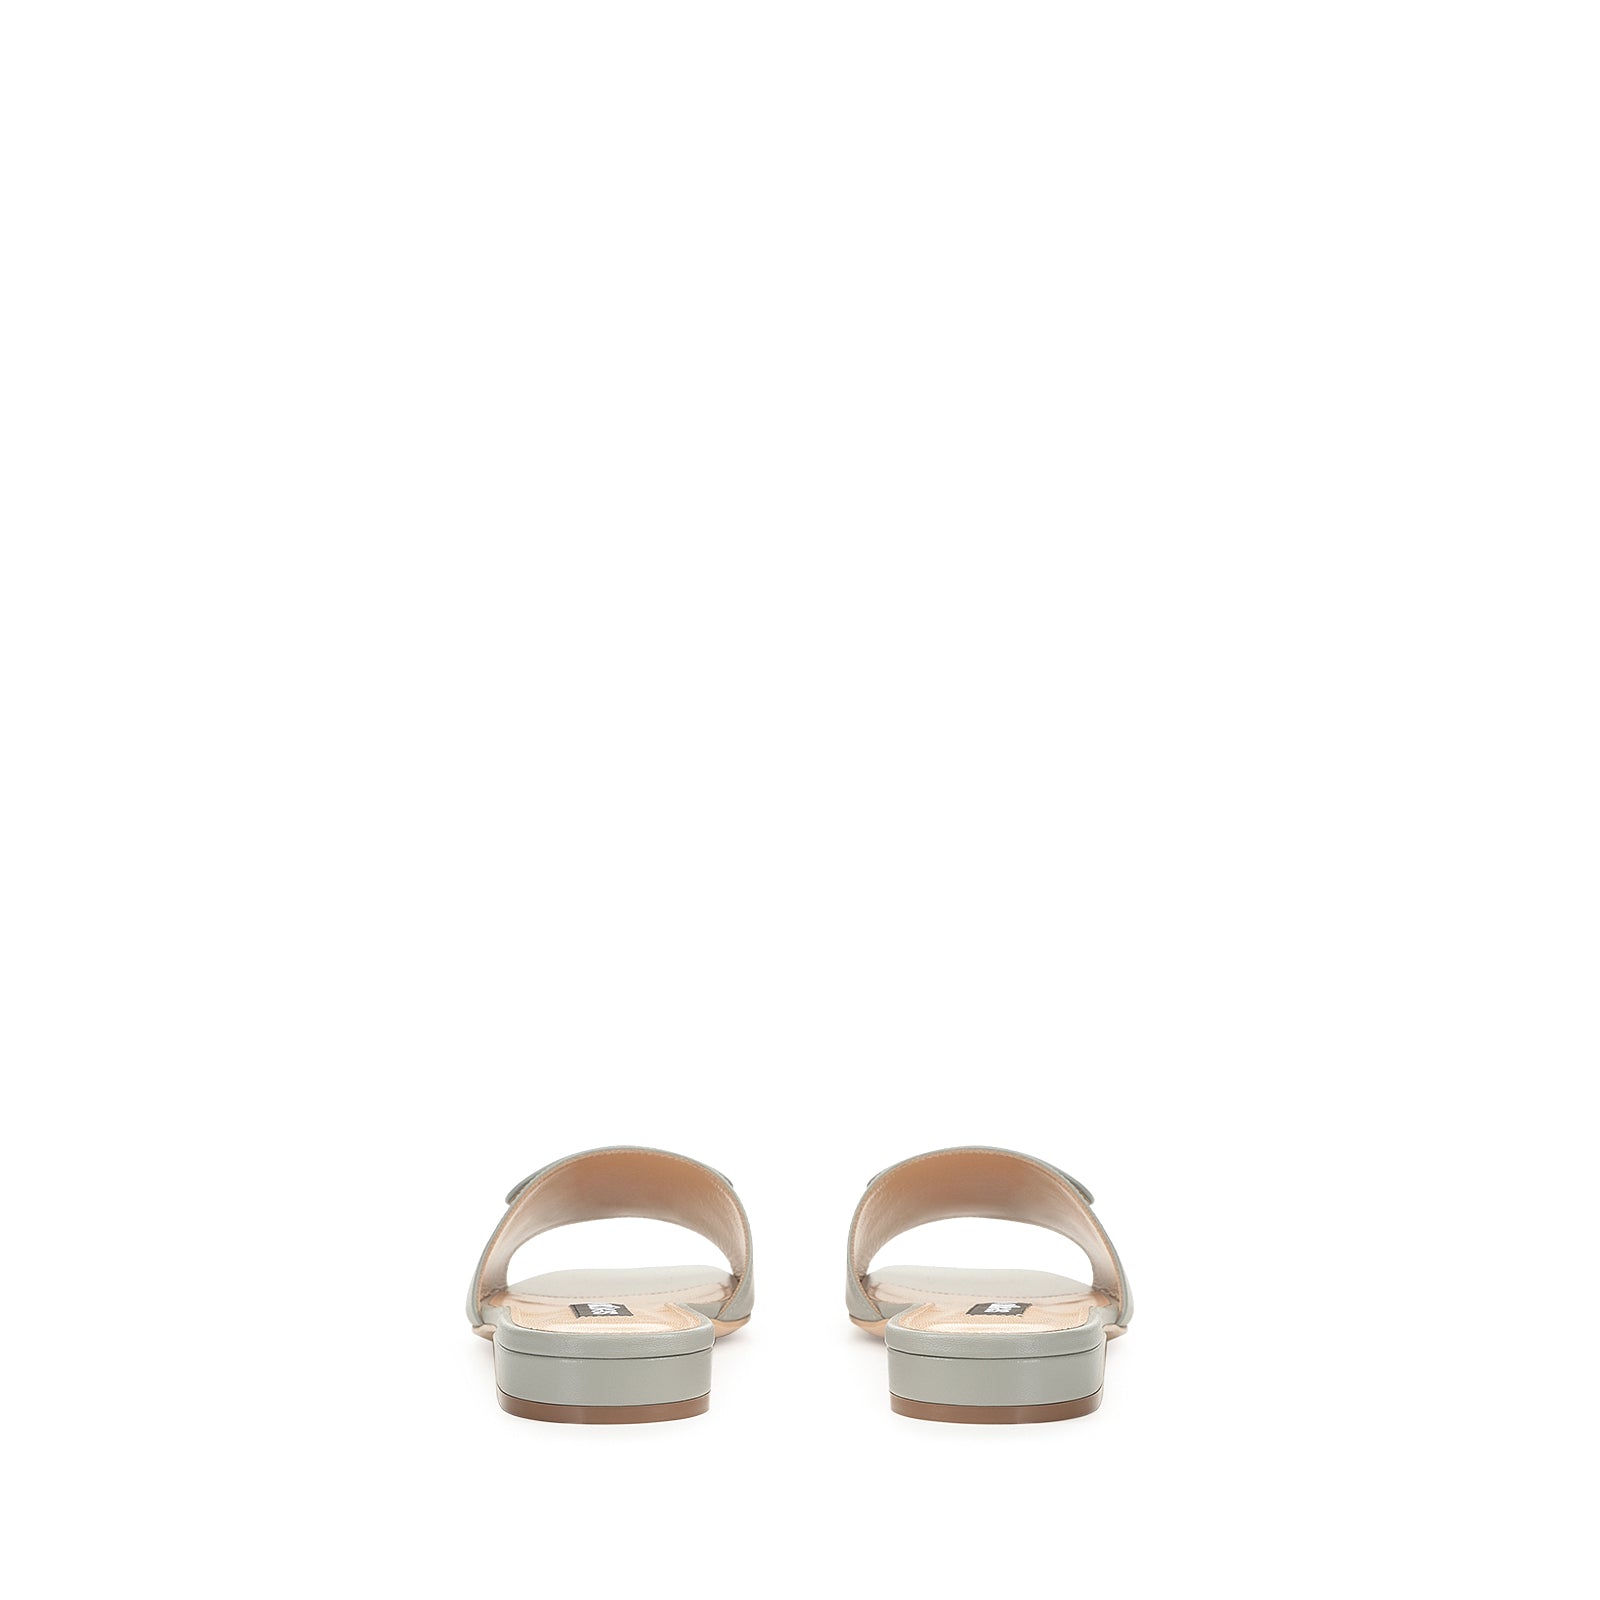 Sr1 flat sandals - Nebbia